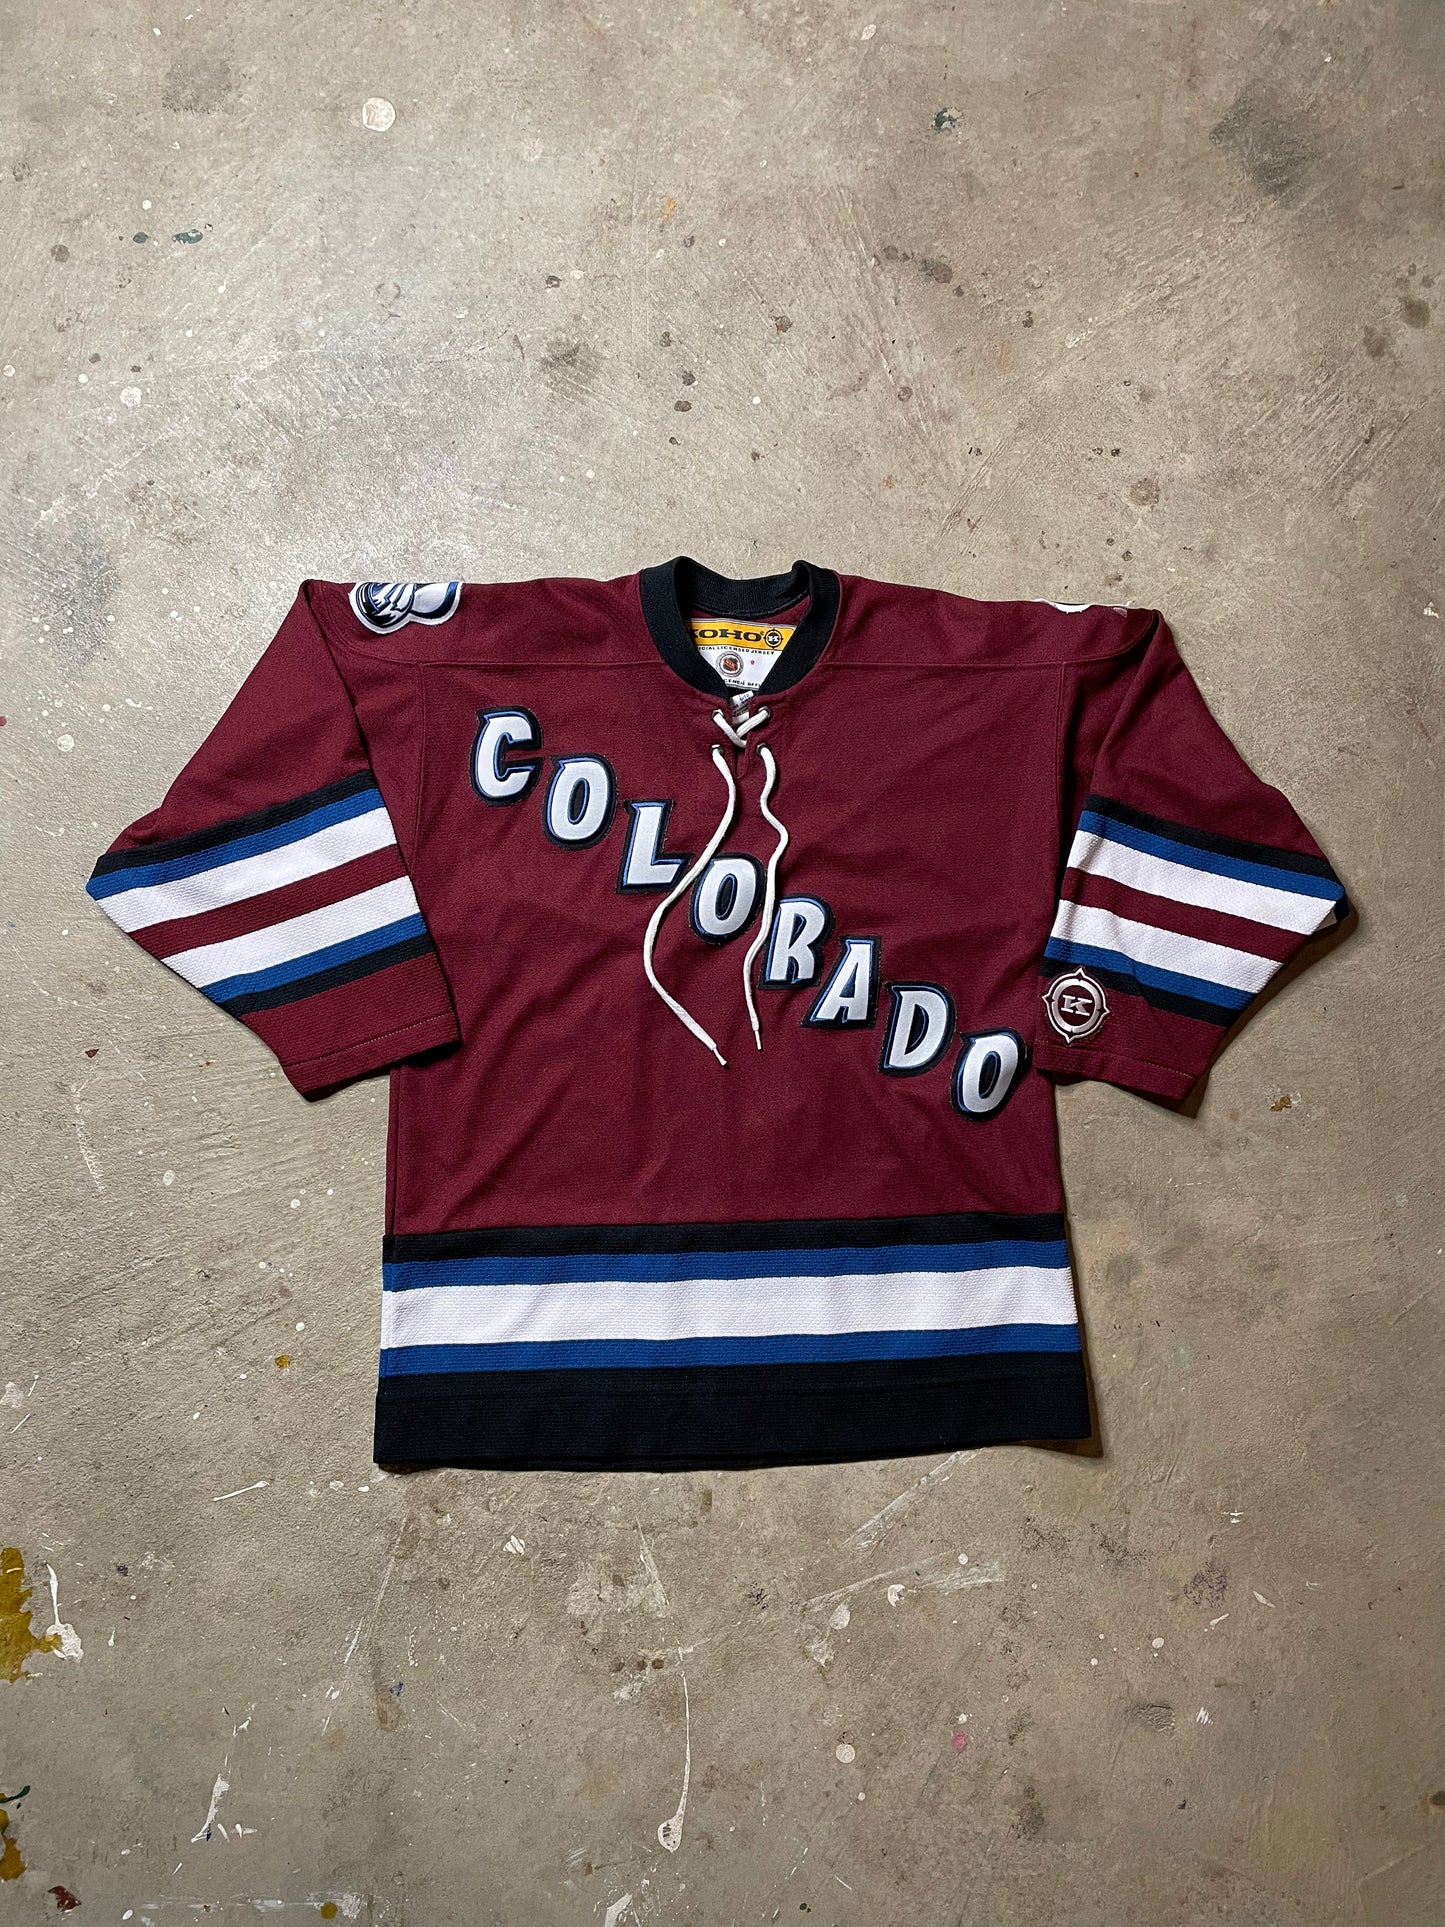 1990s Colorado Avalanche Koho Hockey Jersey